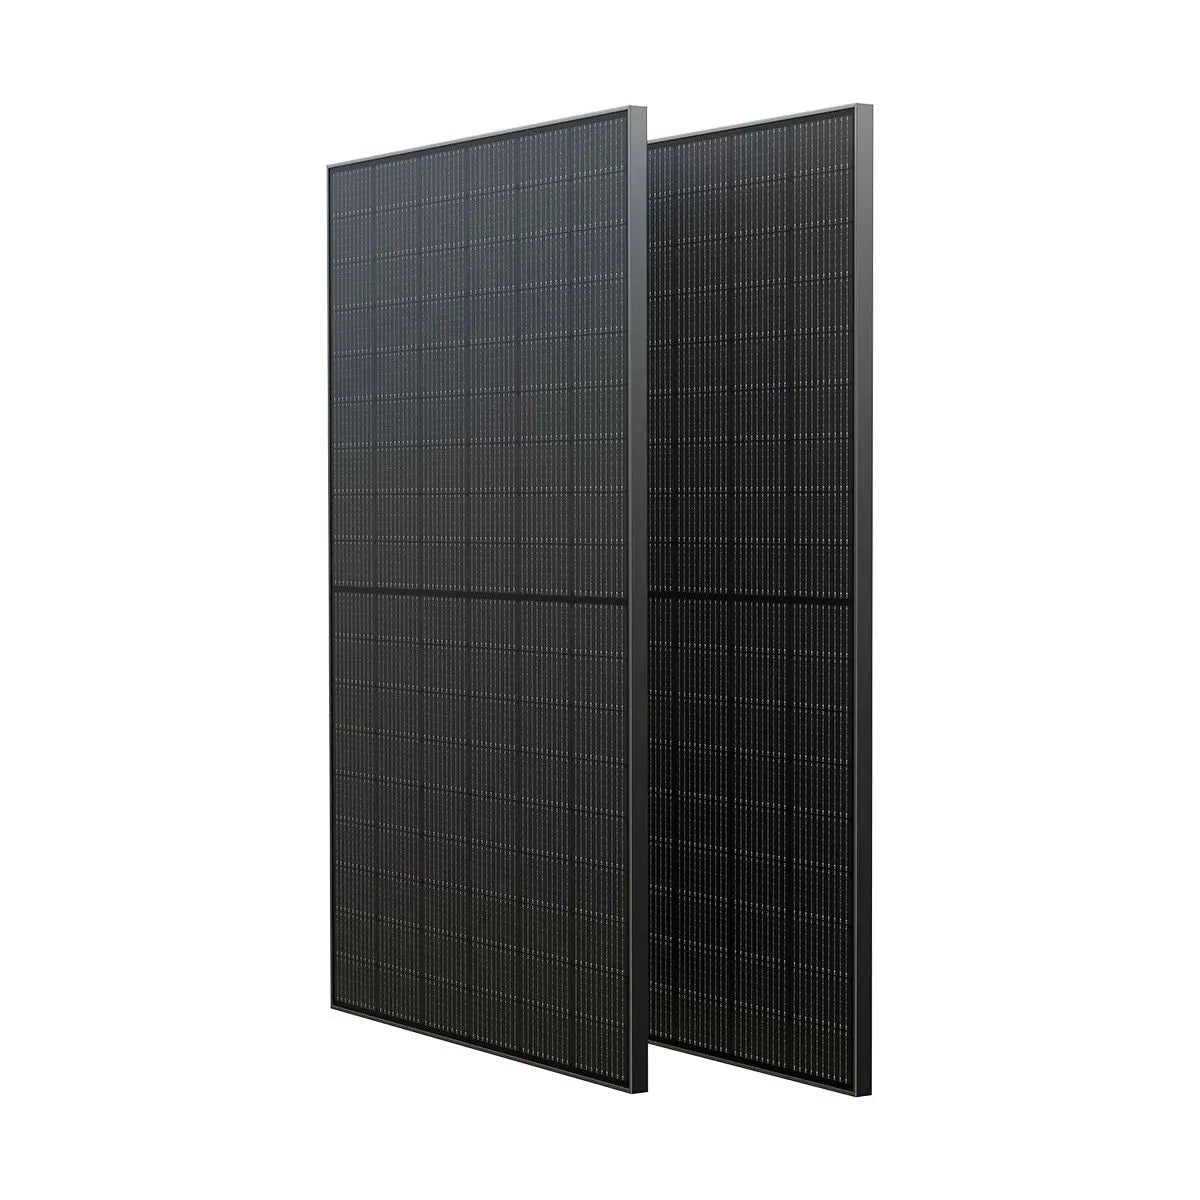 400 Watt Solar Panels